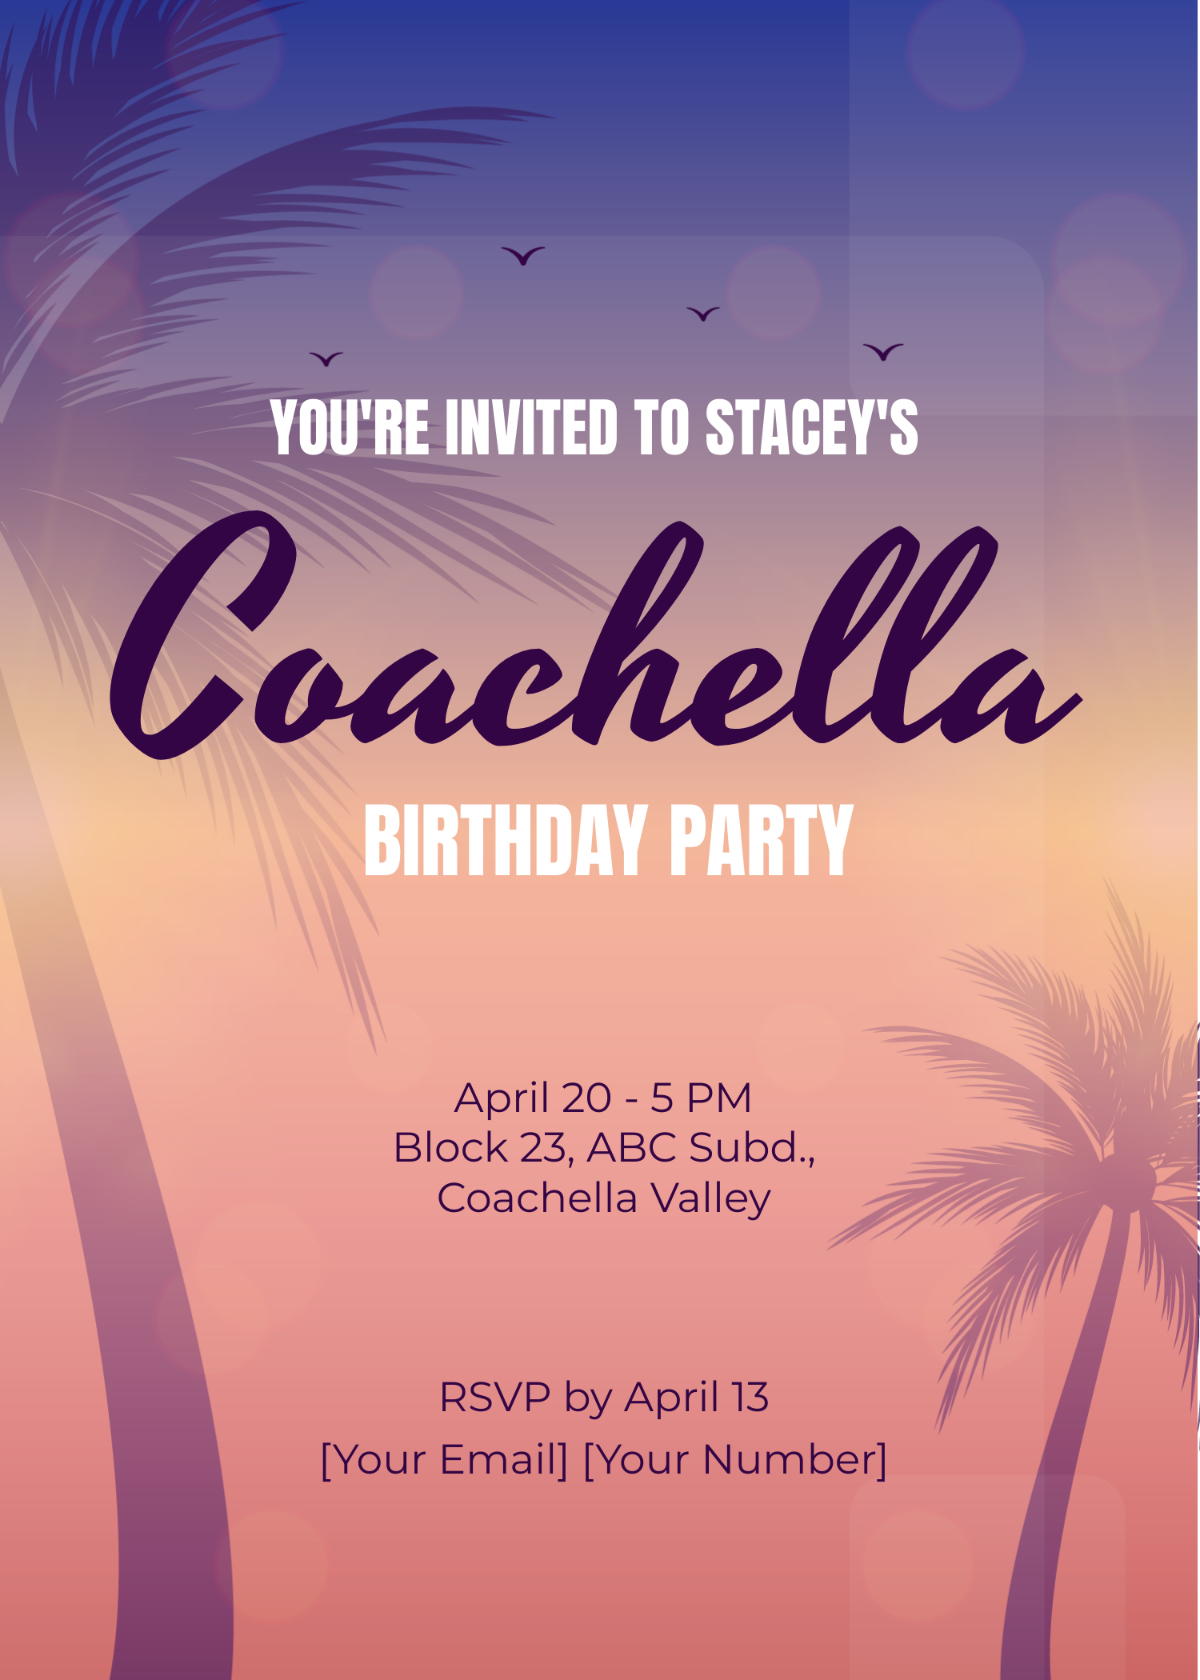 Coachella Themed Party Invitation Template